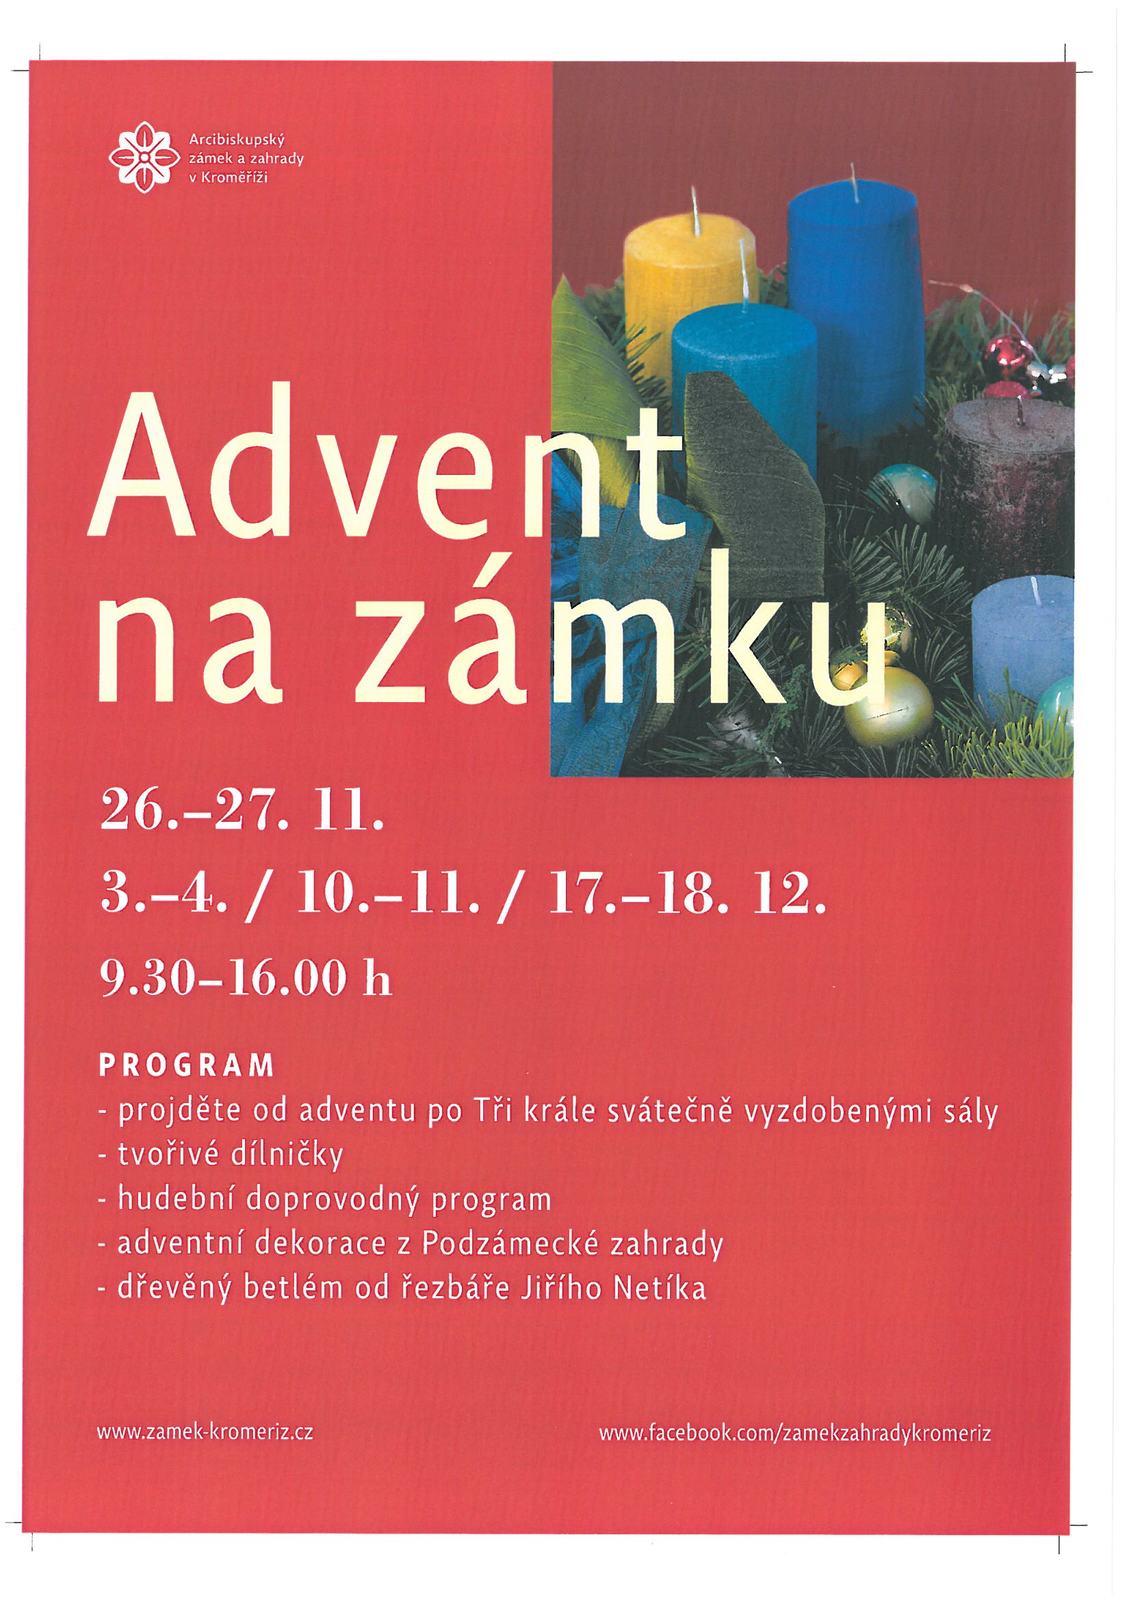 Plakát Advent na zámku Kroměříř.jpg